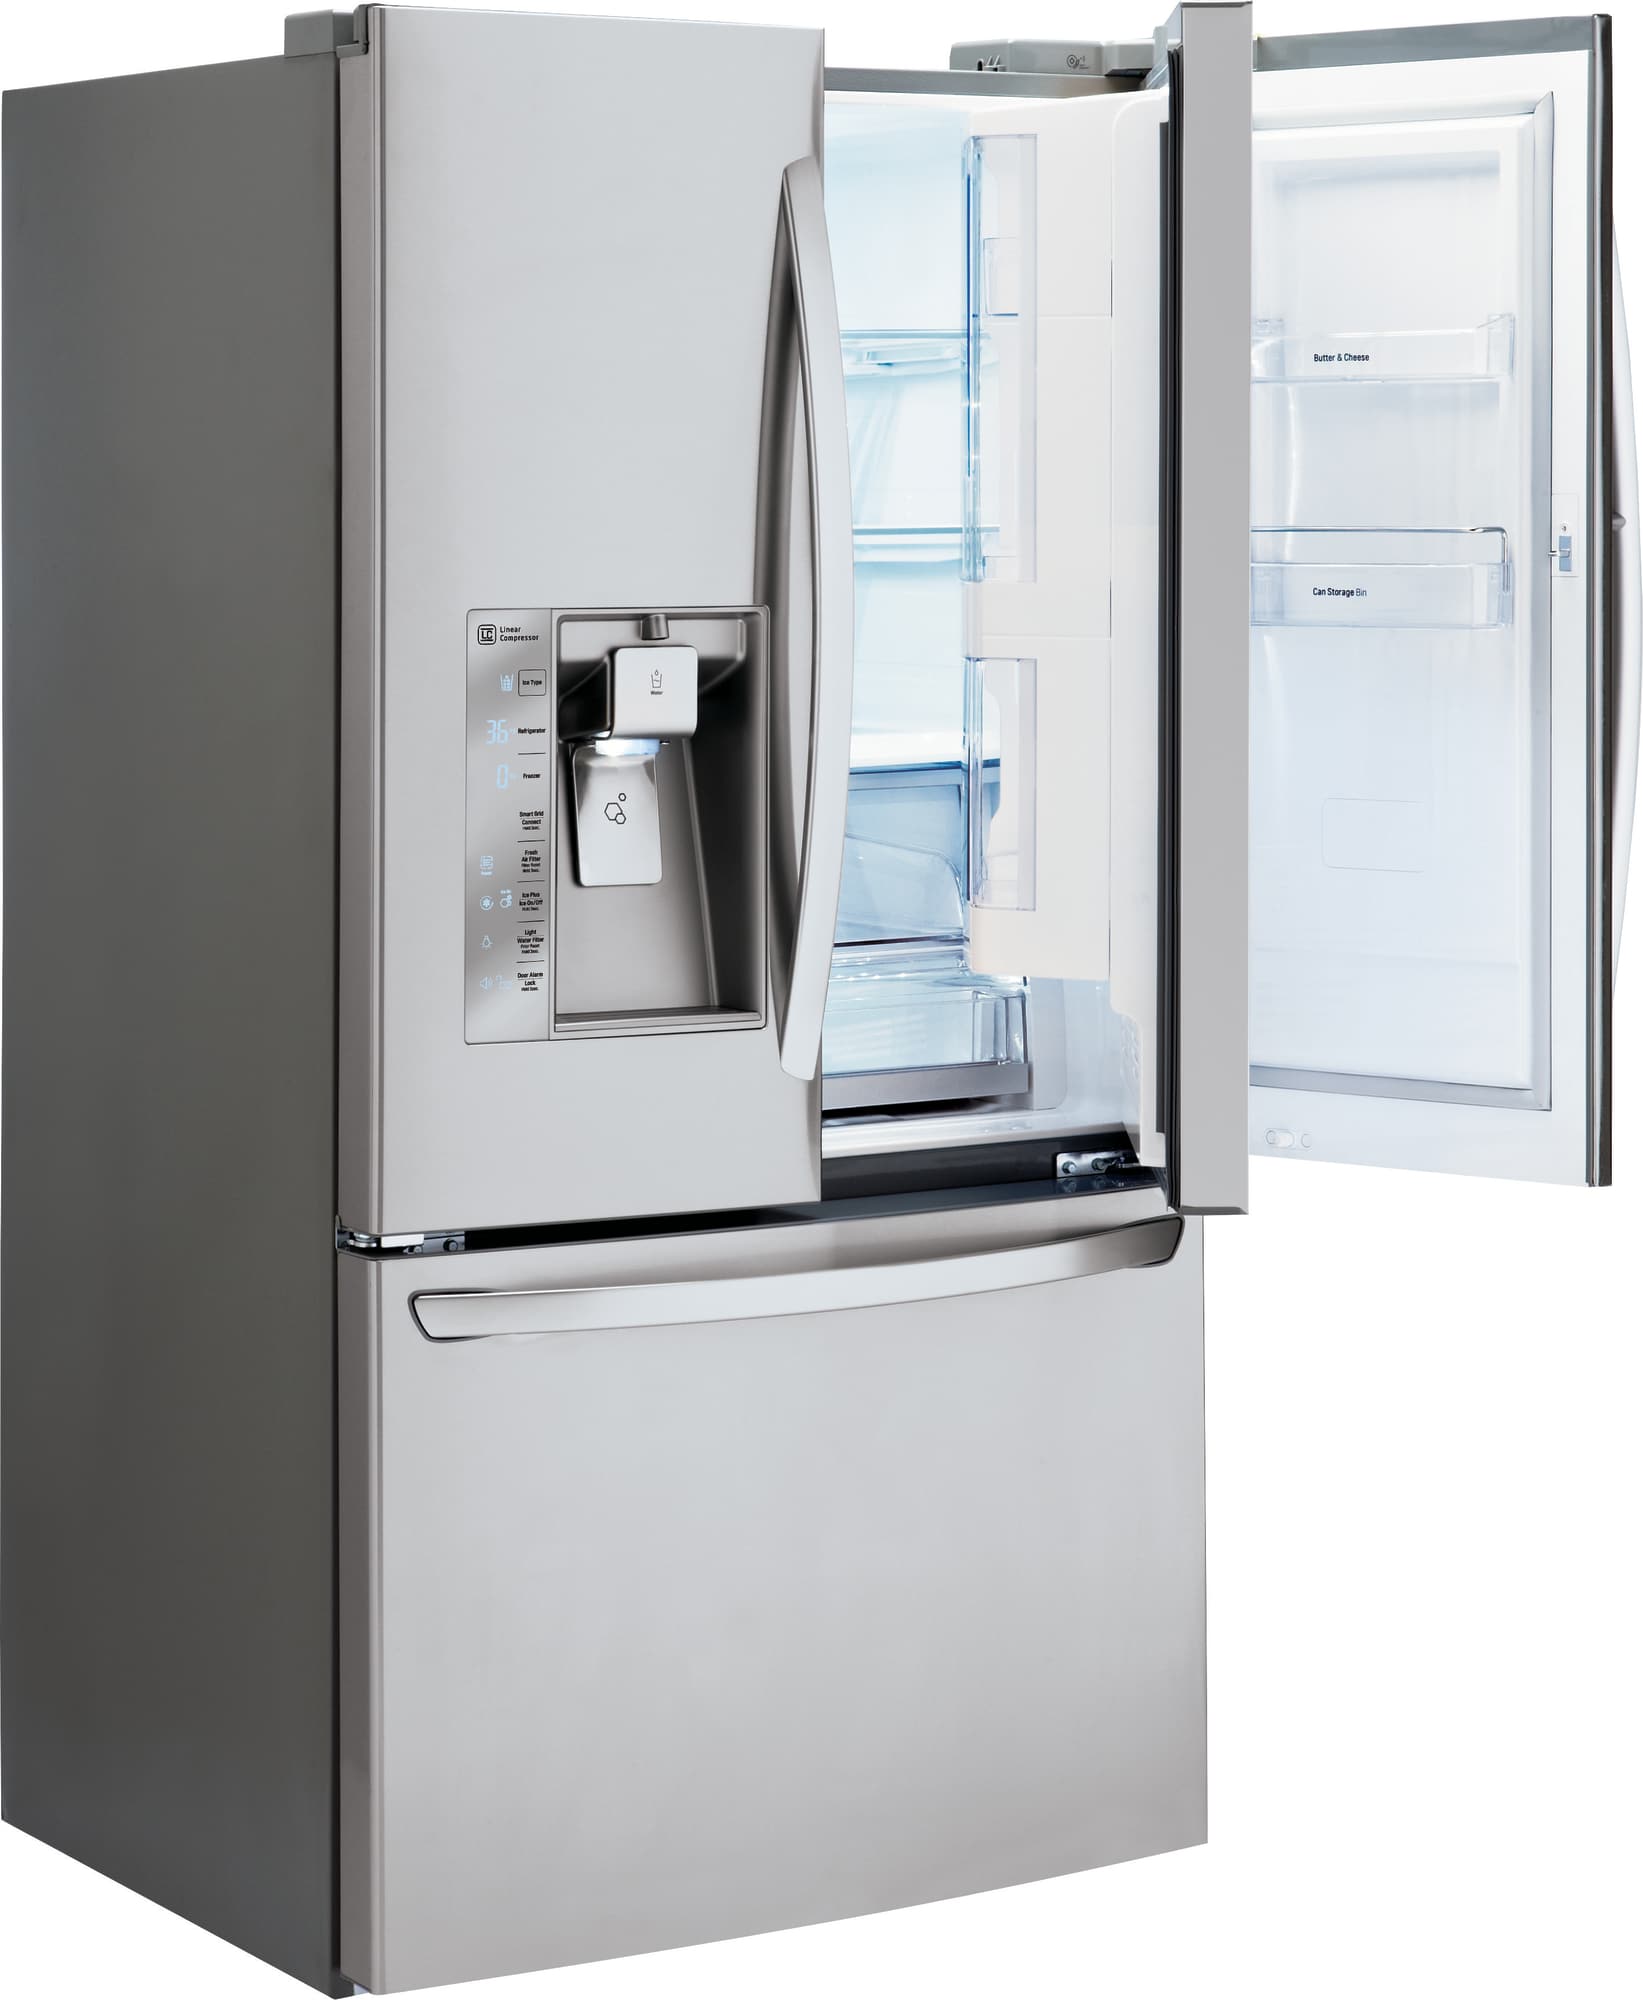 LG LFXS30766S 36 Inch French Door Refrigerator with DoorinDoor®, Slim SpacePlus® Ice System